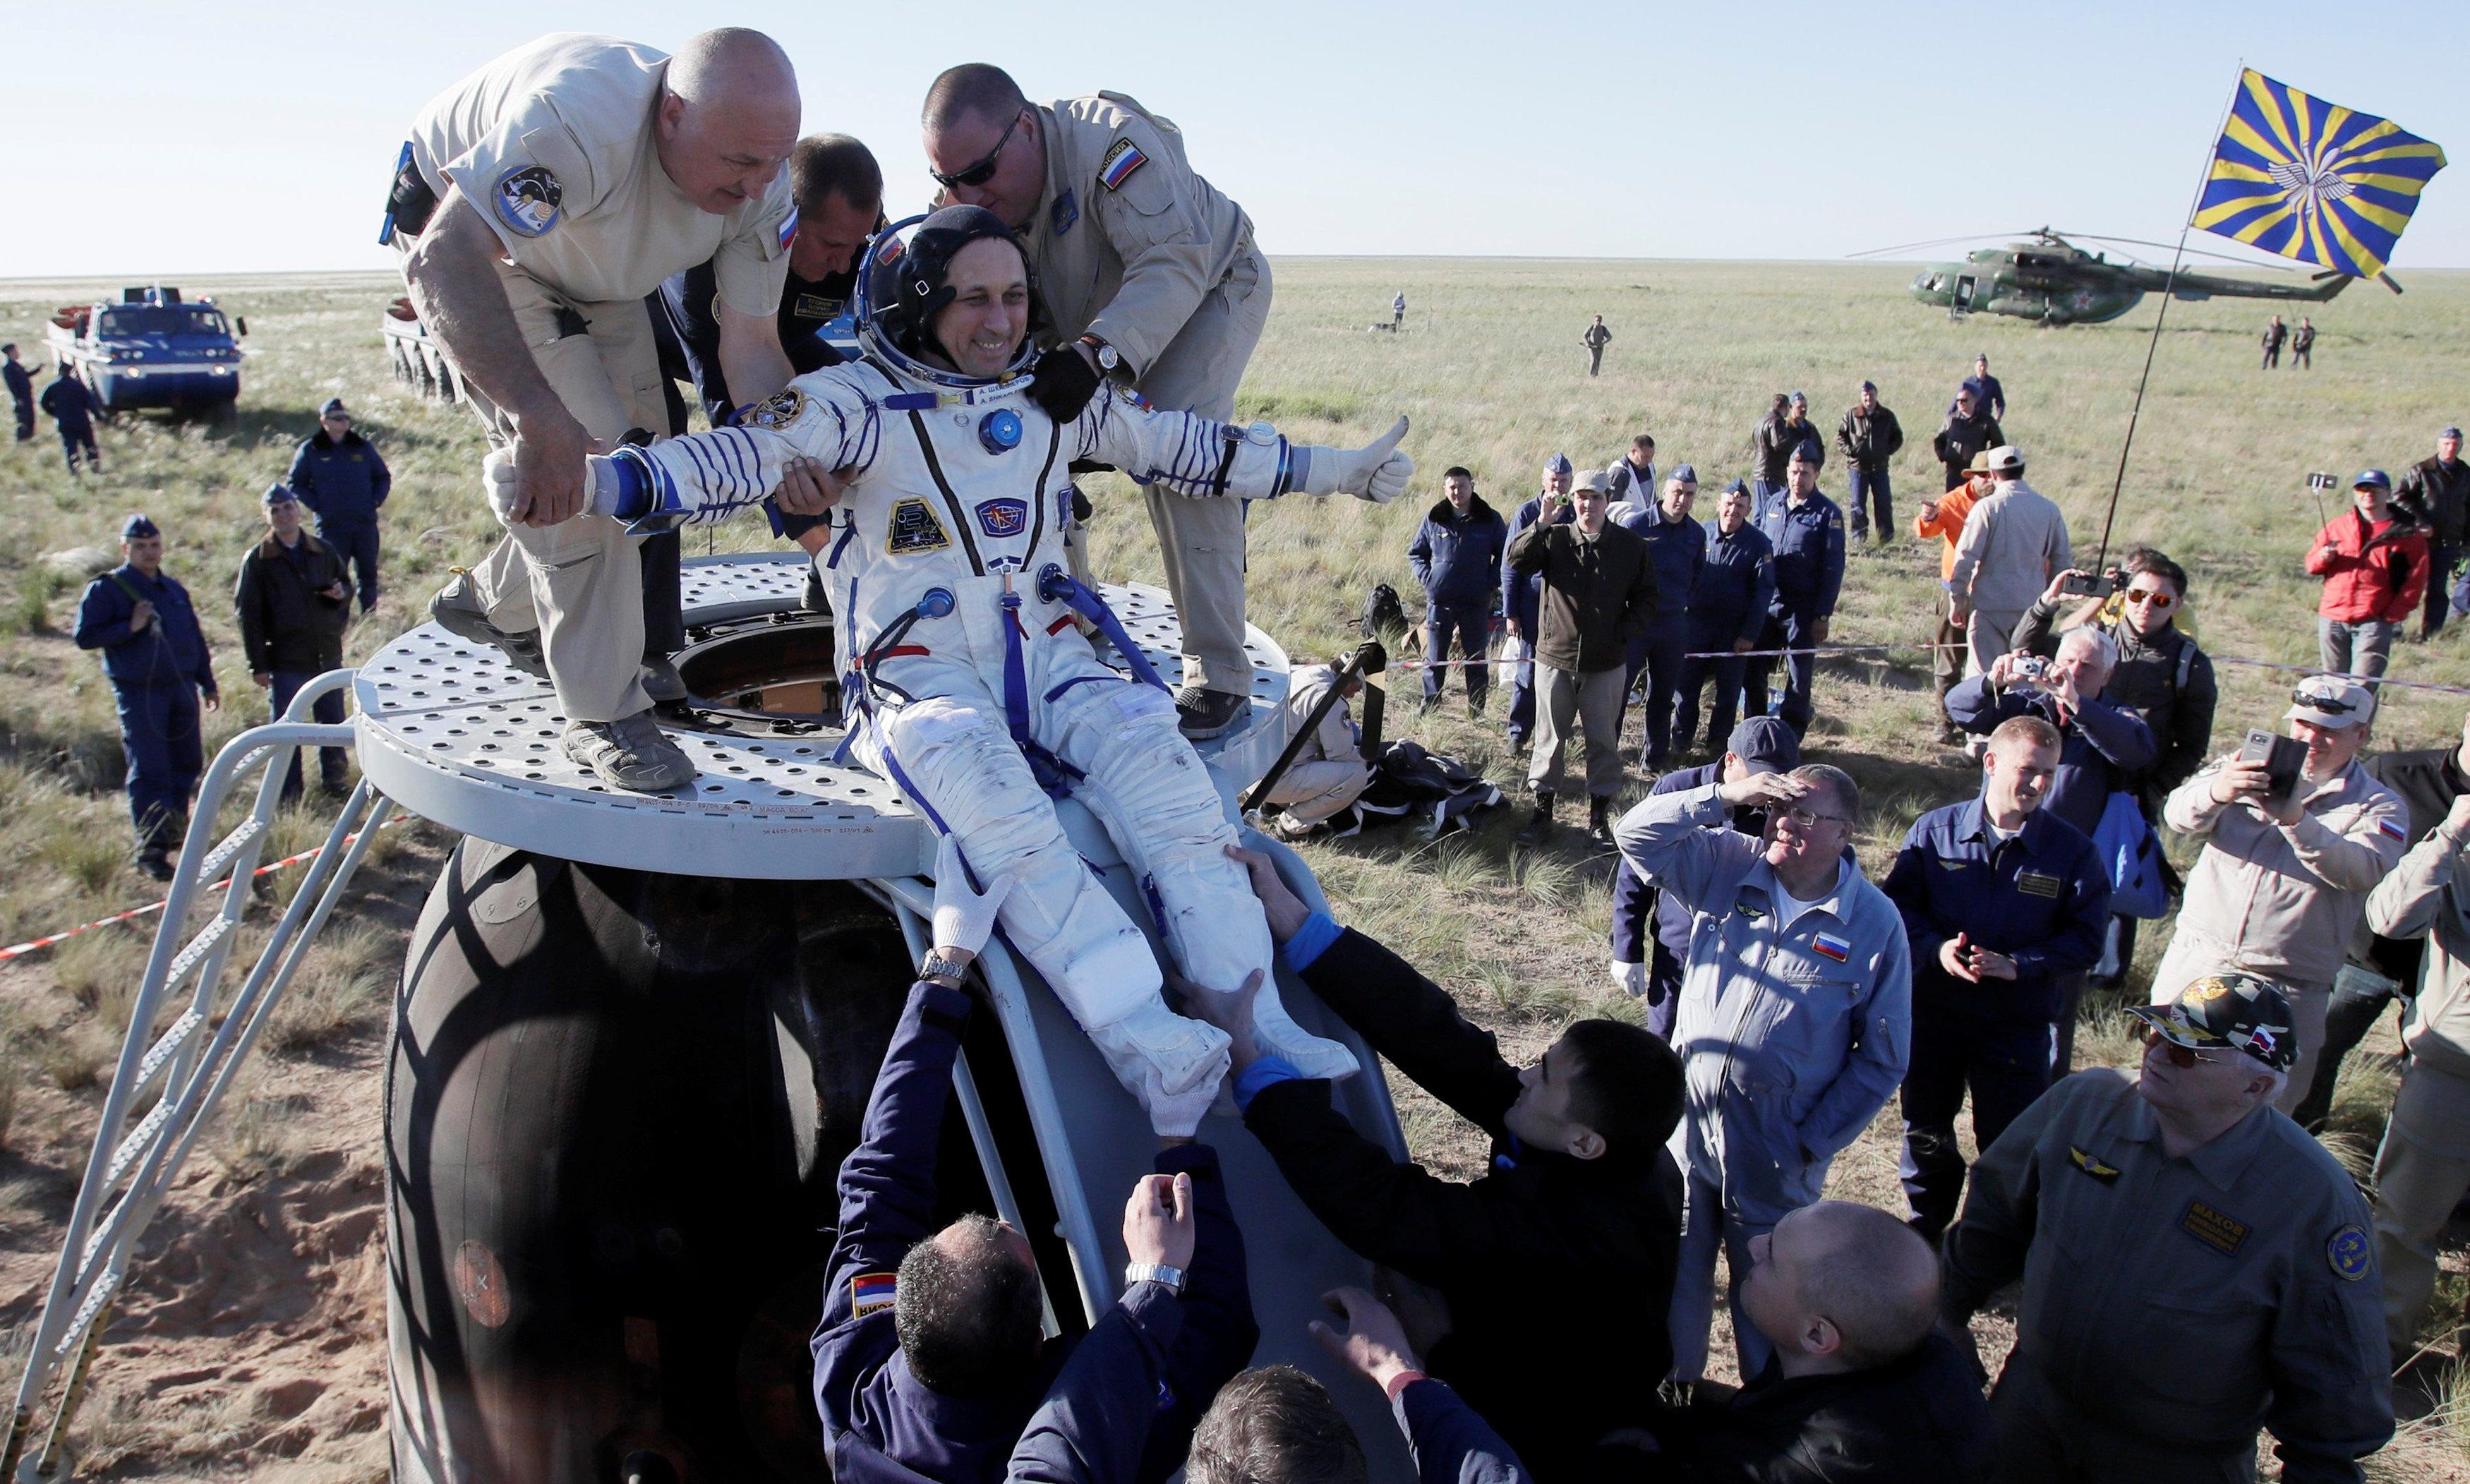 (FOTO) PRAVO IZ SVEMIRA NA CENTAR! Astronauti doneli loptu koja 'otvara' Mundijal!